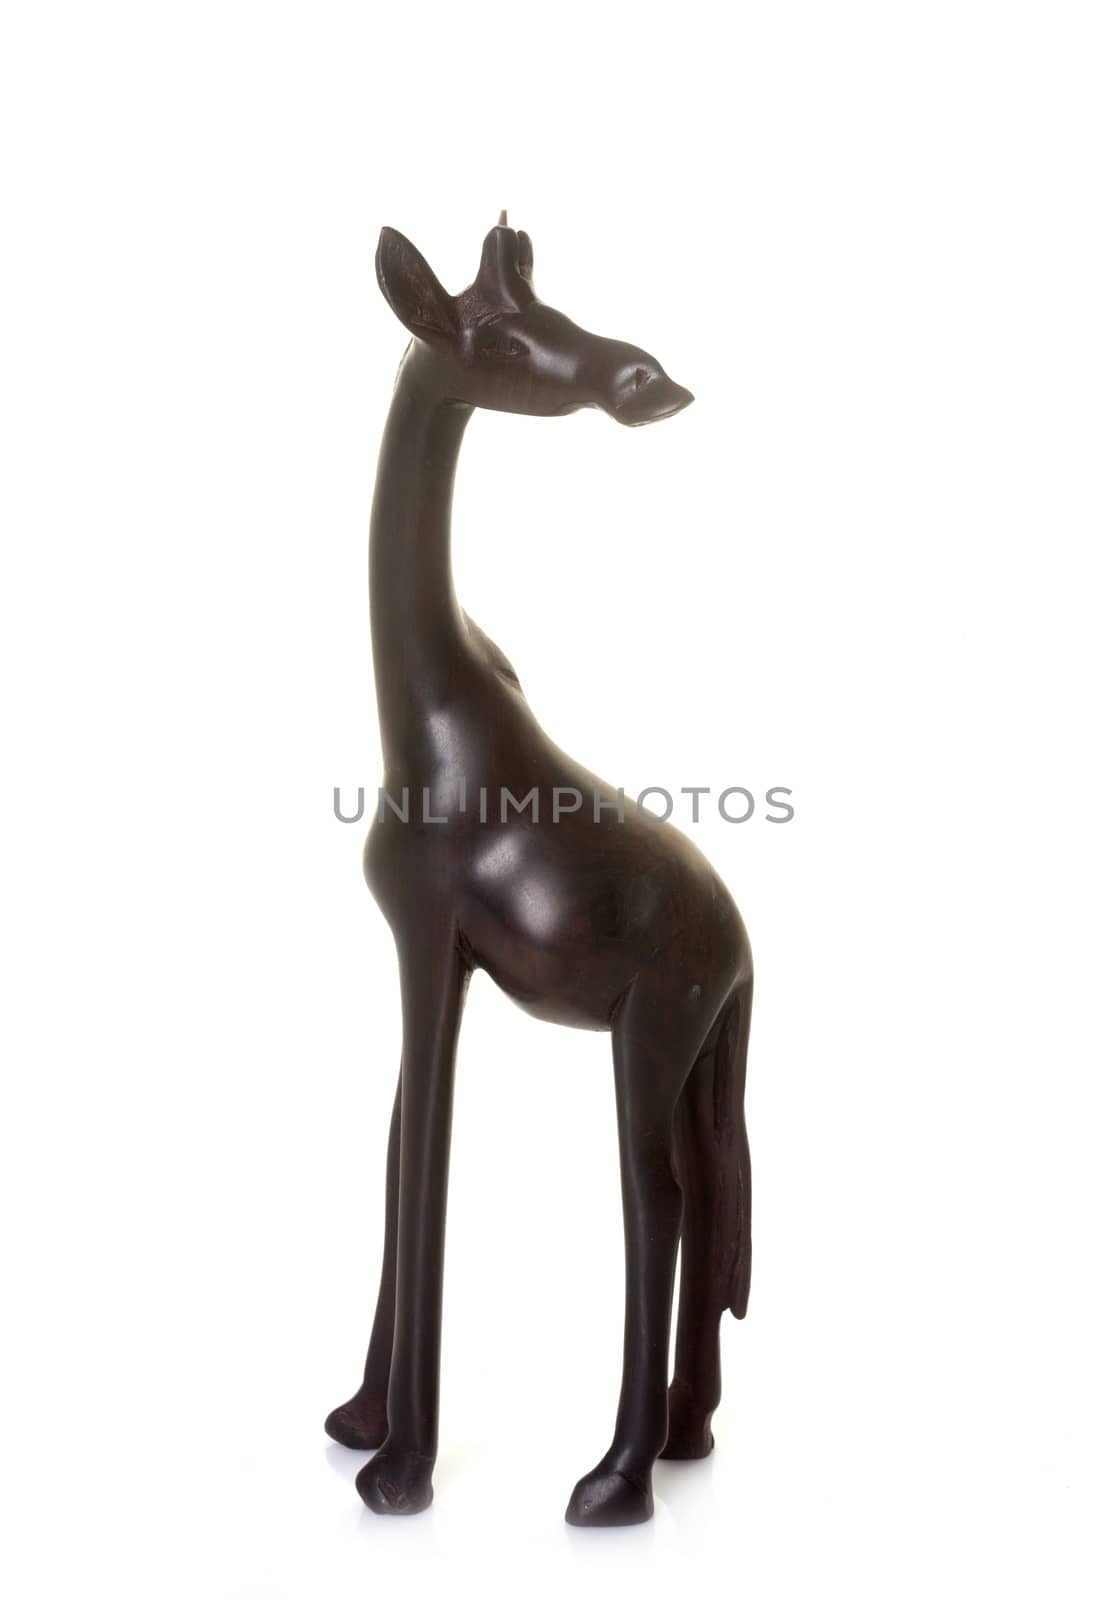   giraffe trinket in studio by cynoclub